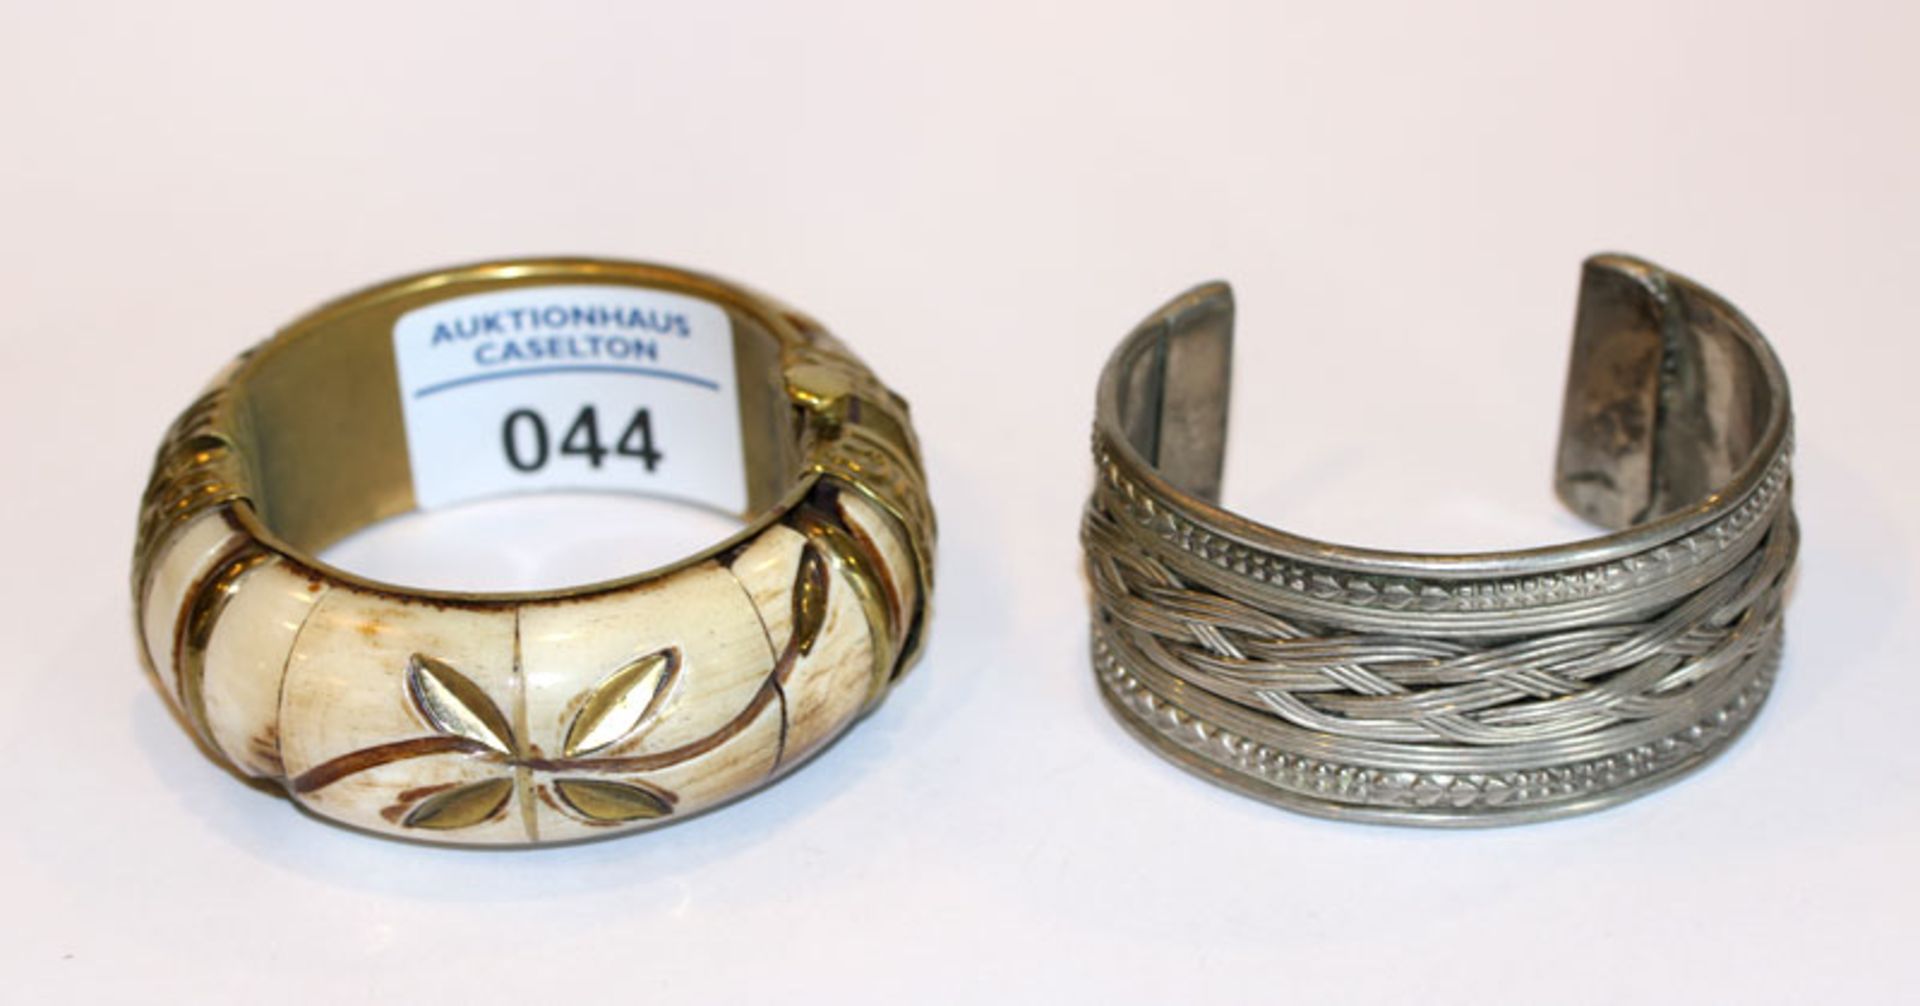 Metall/Bein Armreif, schön verziert, D ca. 6 cm, und Metall Armspange mit Reliefdekor, D 6,5 cm